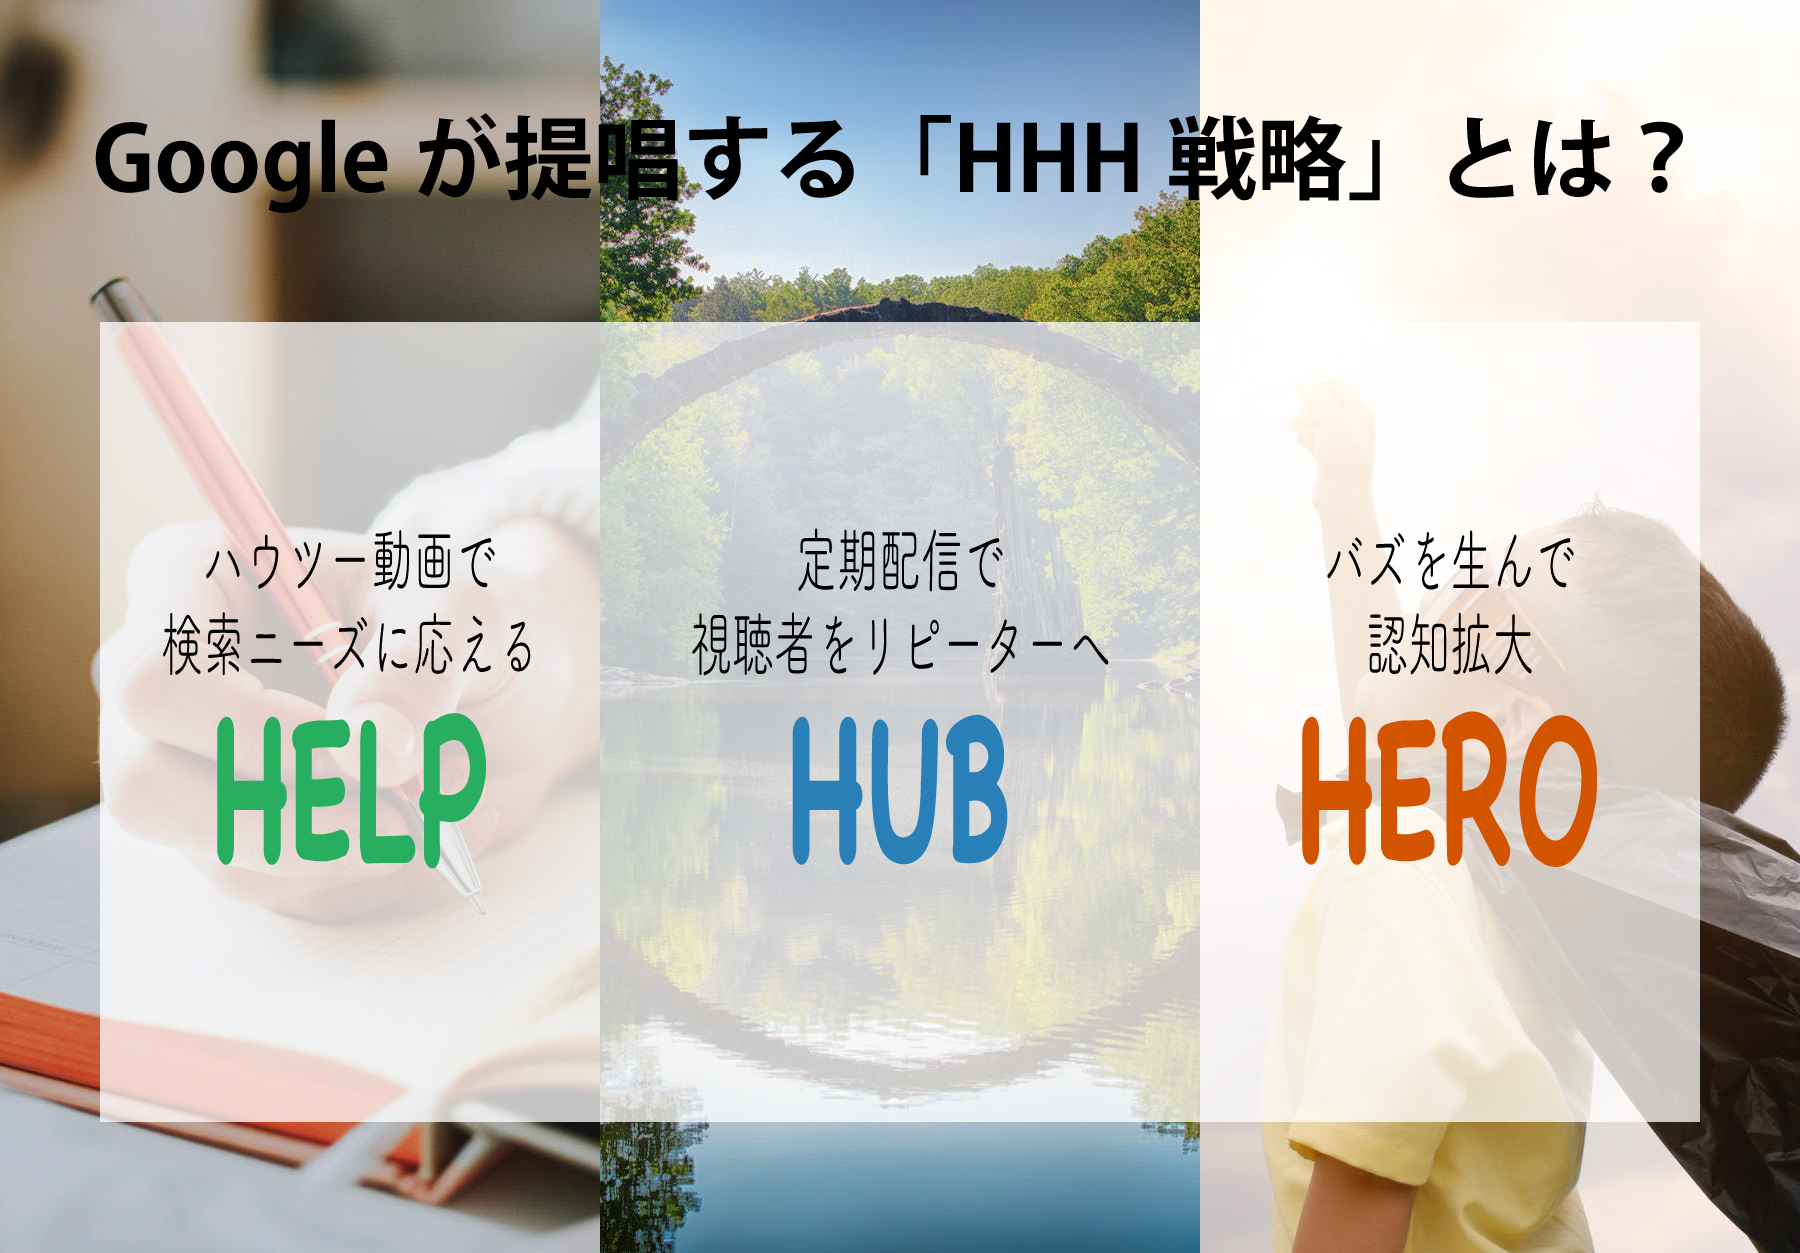 Googleが提唱する「HHH戦略」の図